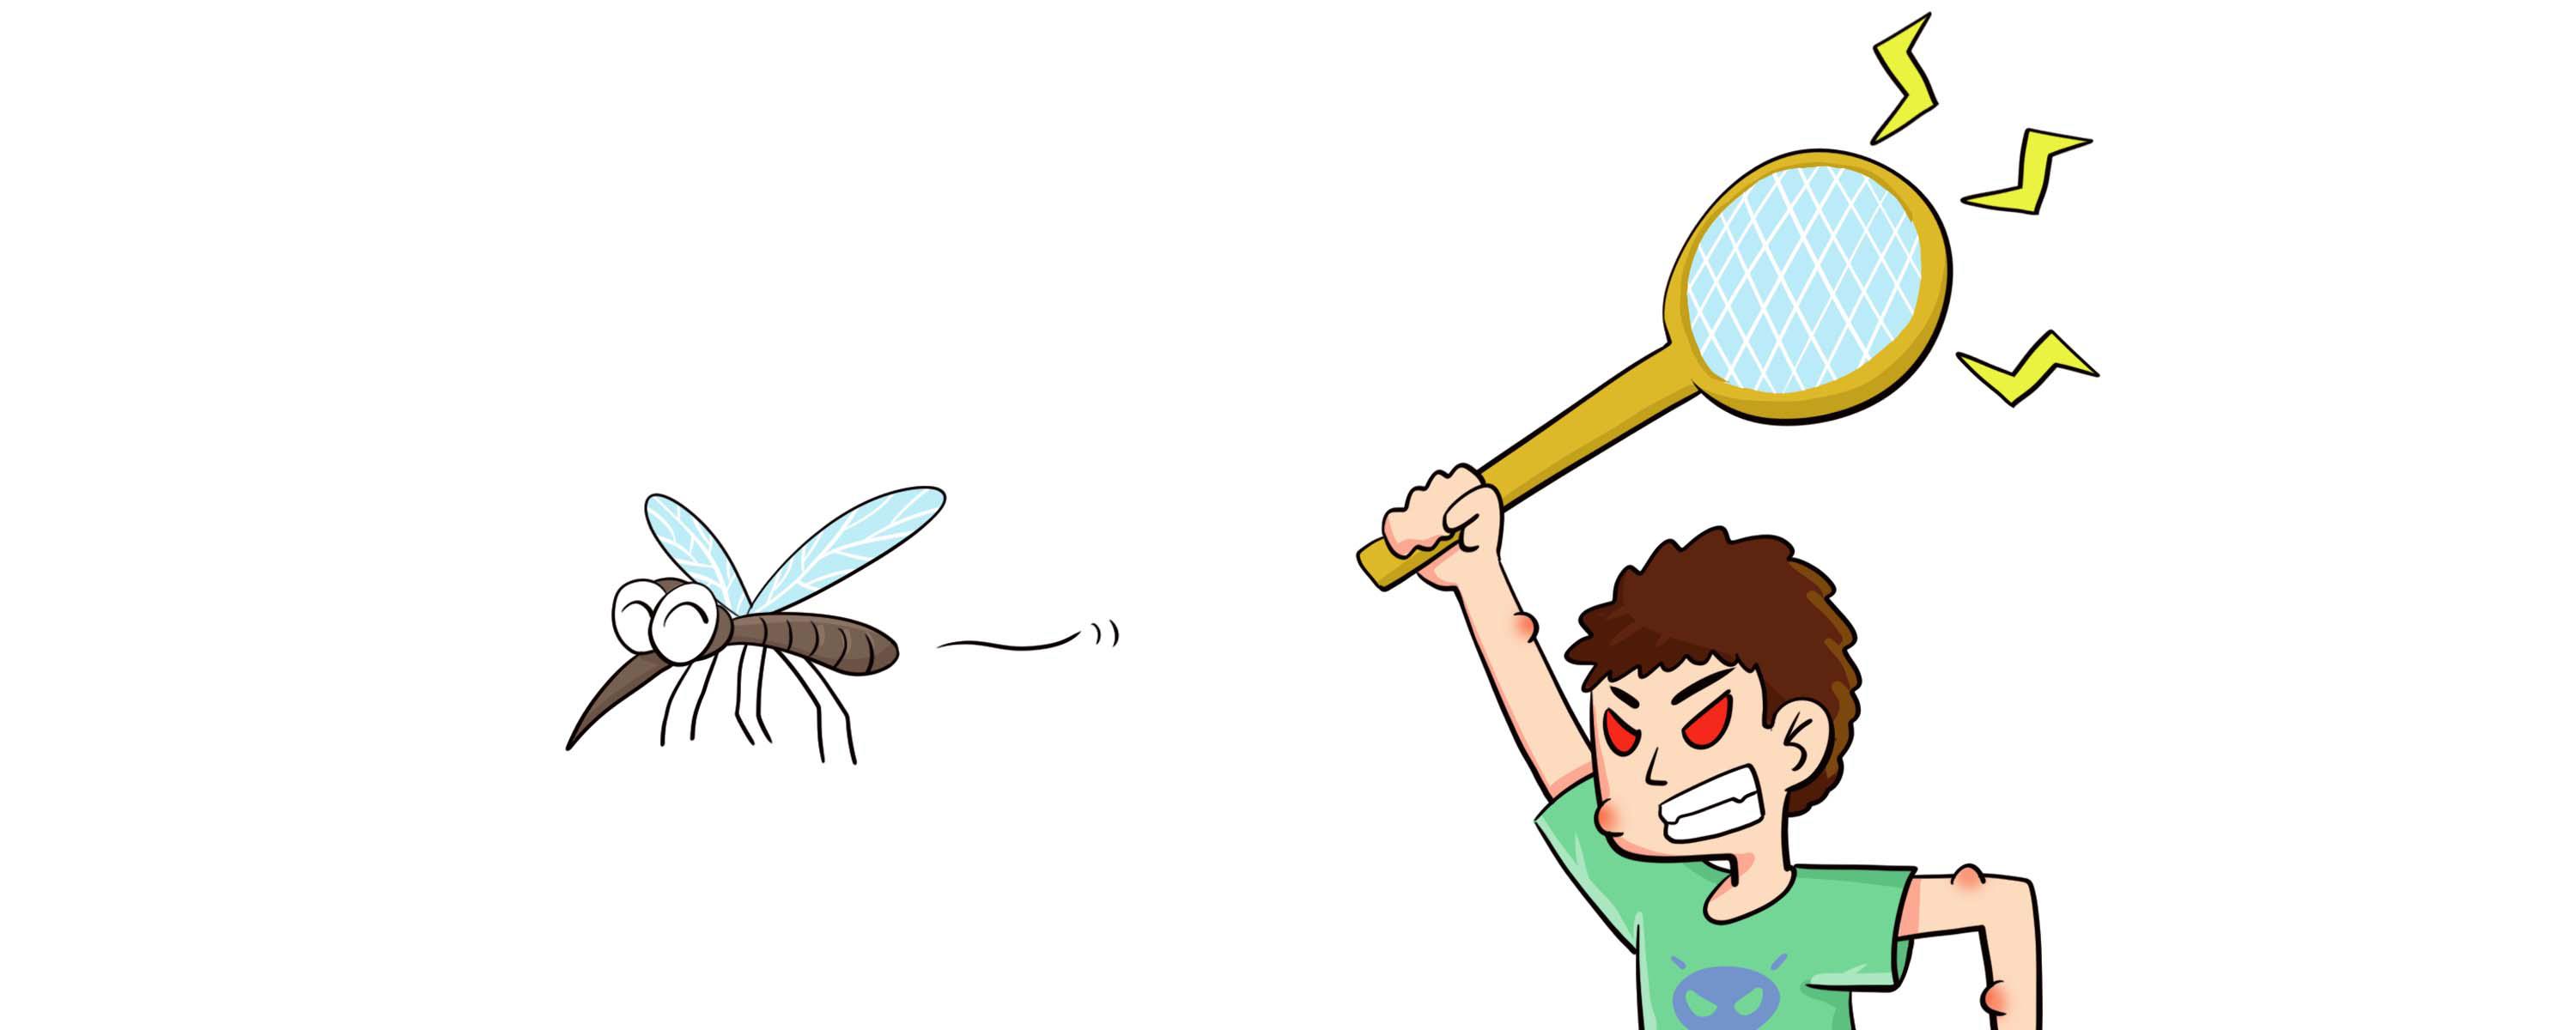 电蚊拍上的灯可以吸引蚊子吗 电蚊拍能引诱蚊子吗